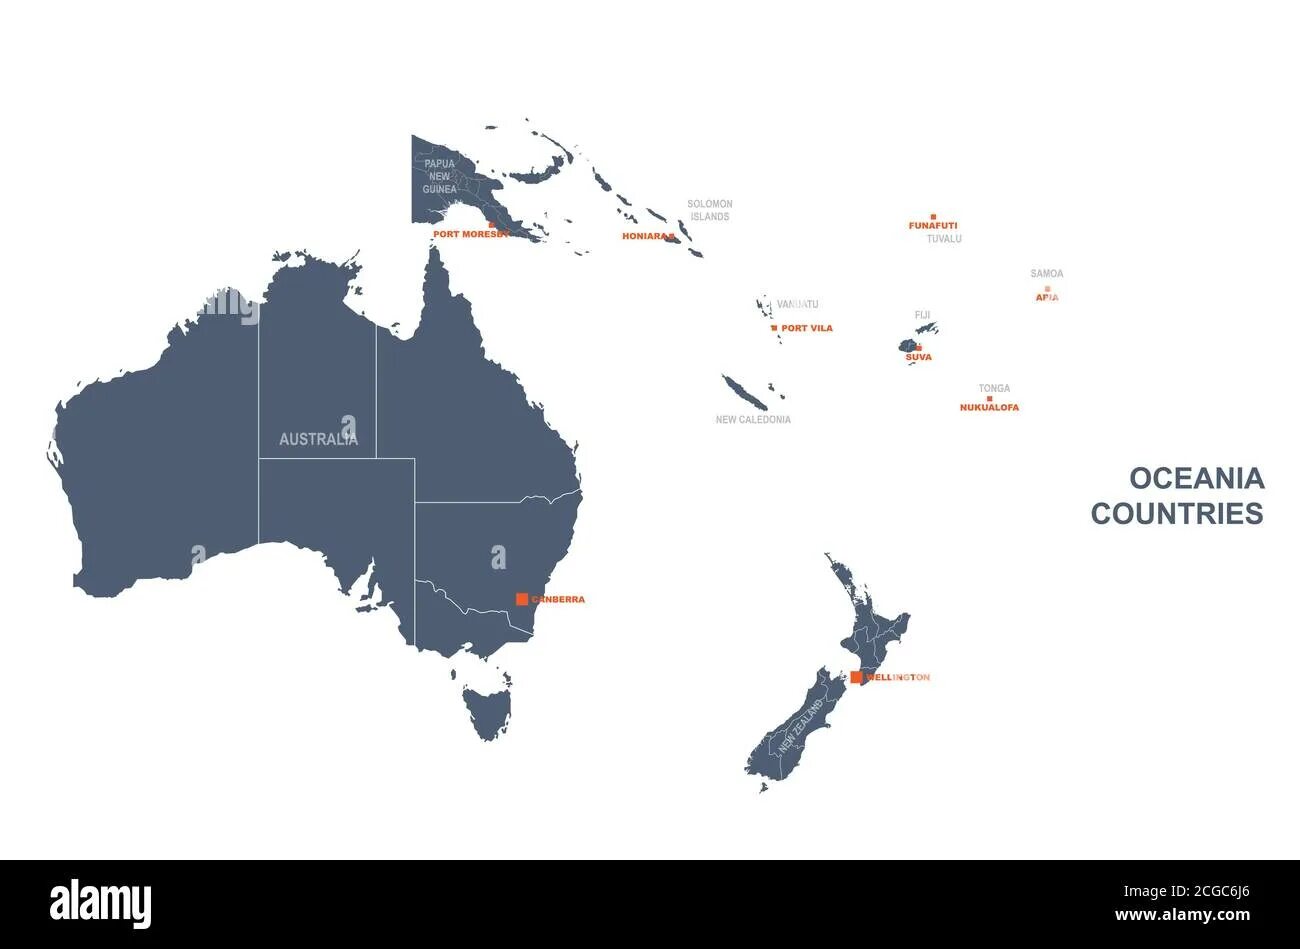 Страны океании австралия и новая зеландия. Океания на карте. Australia and Oceania Countries. Australia New Zealand and Oceania Map. Контурная карта Океании.